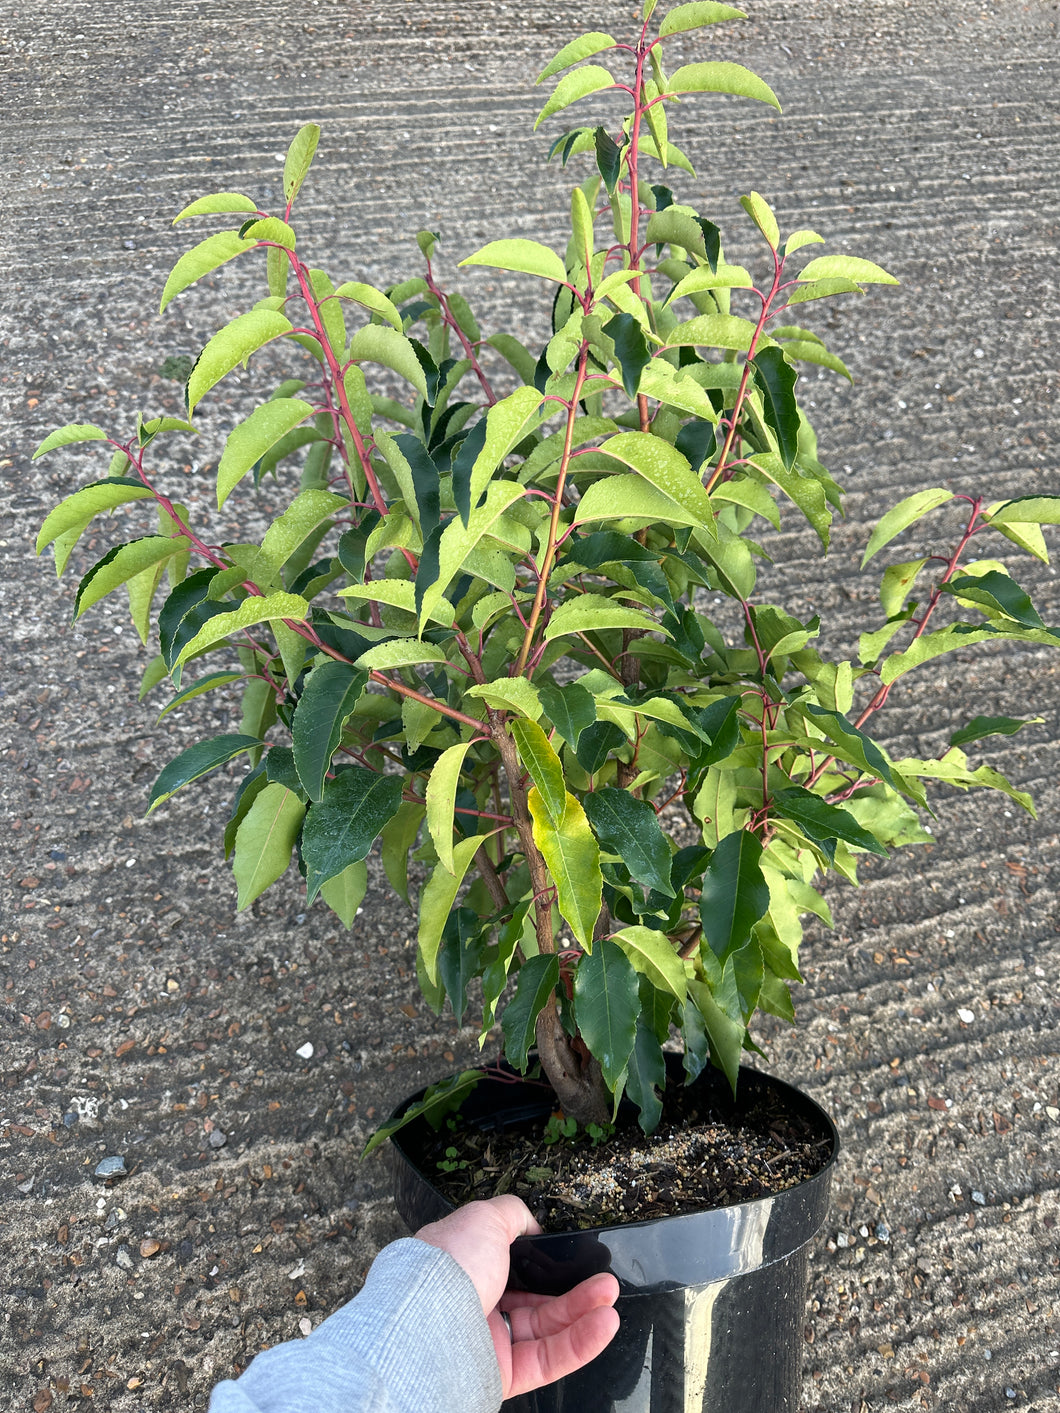 Prunus lusitanica 'Angustifolia' / Portugeuse Laurel